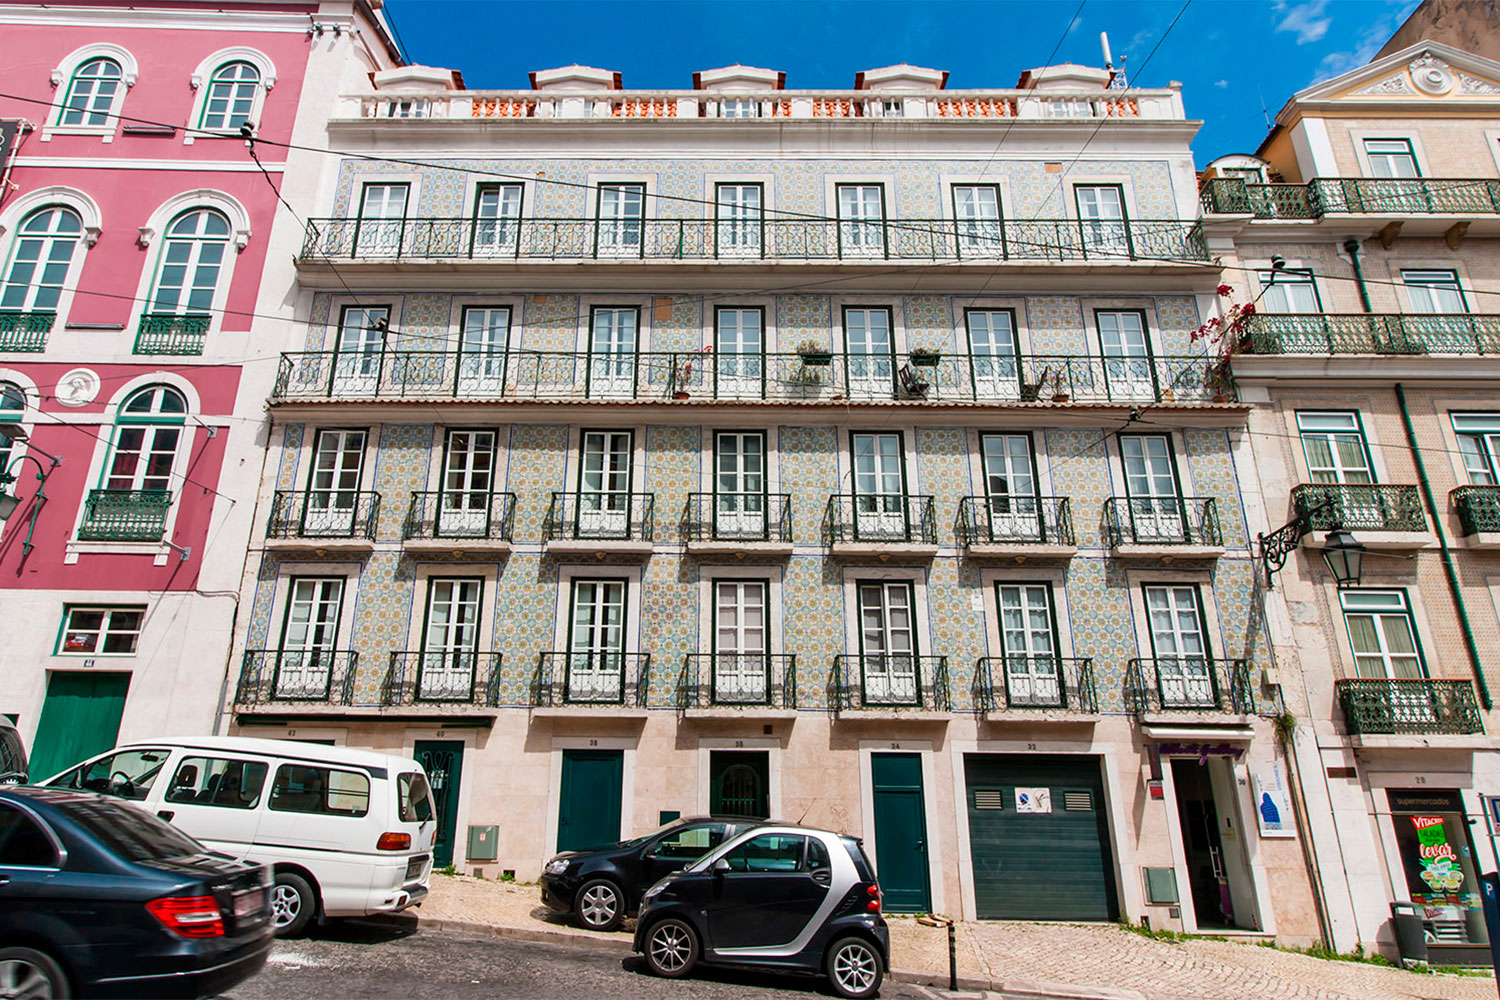 Building in Chiado, Lisbon